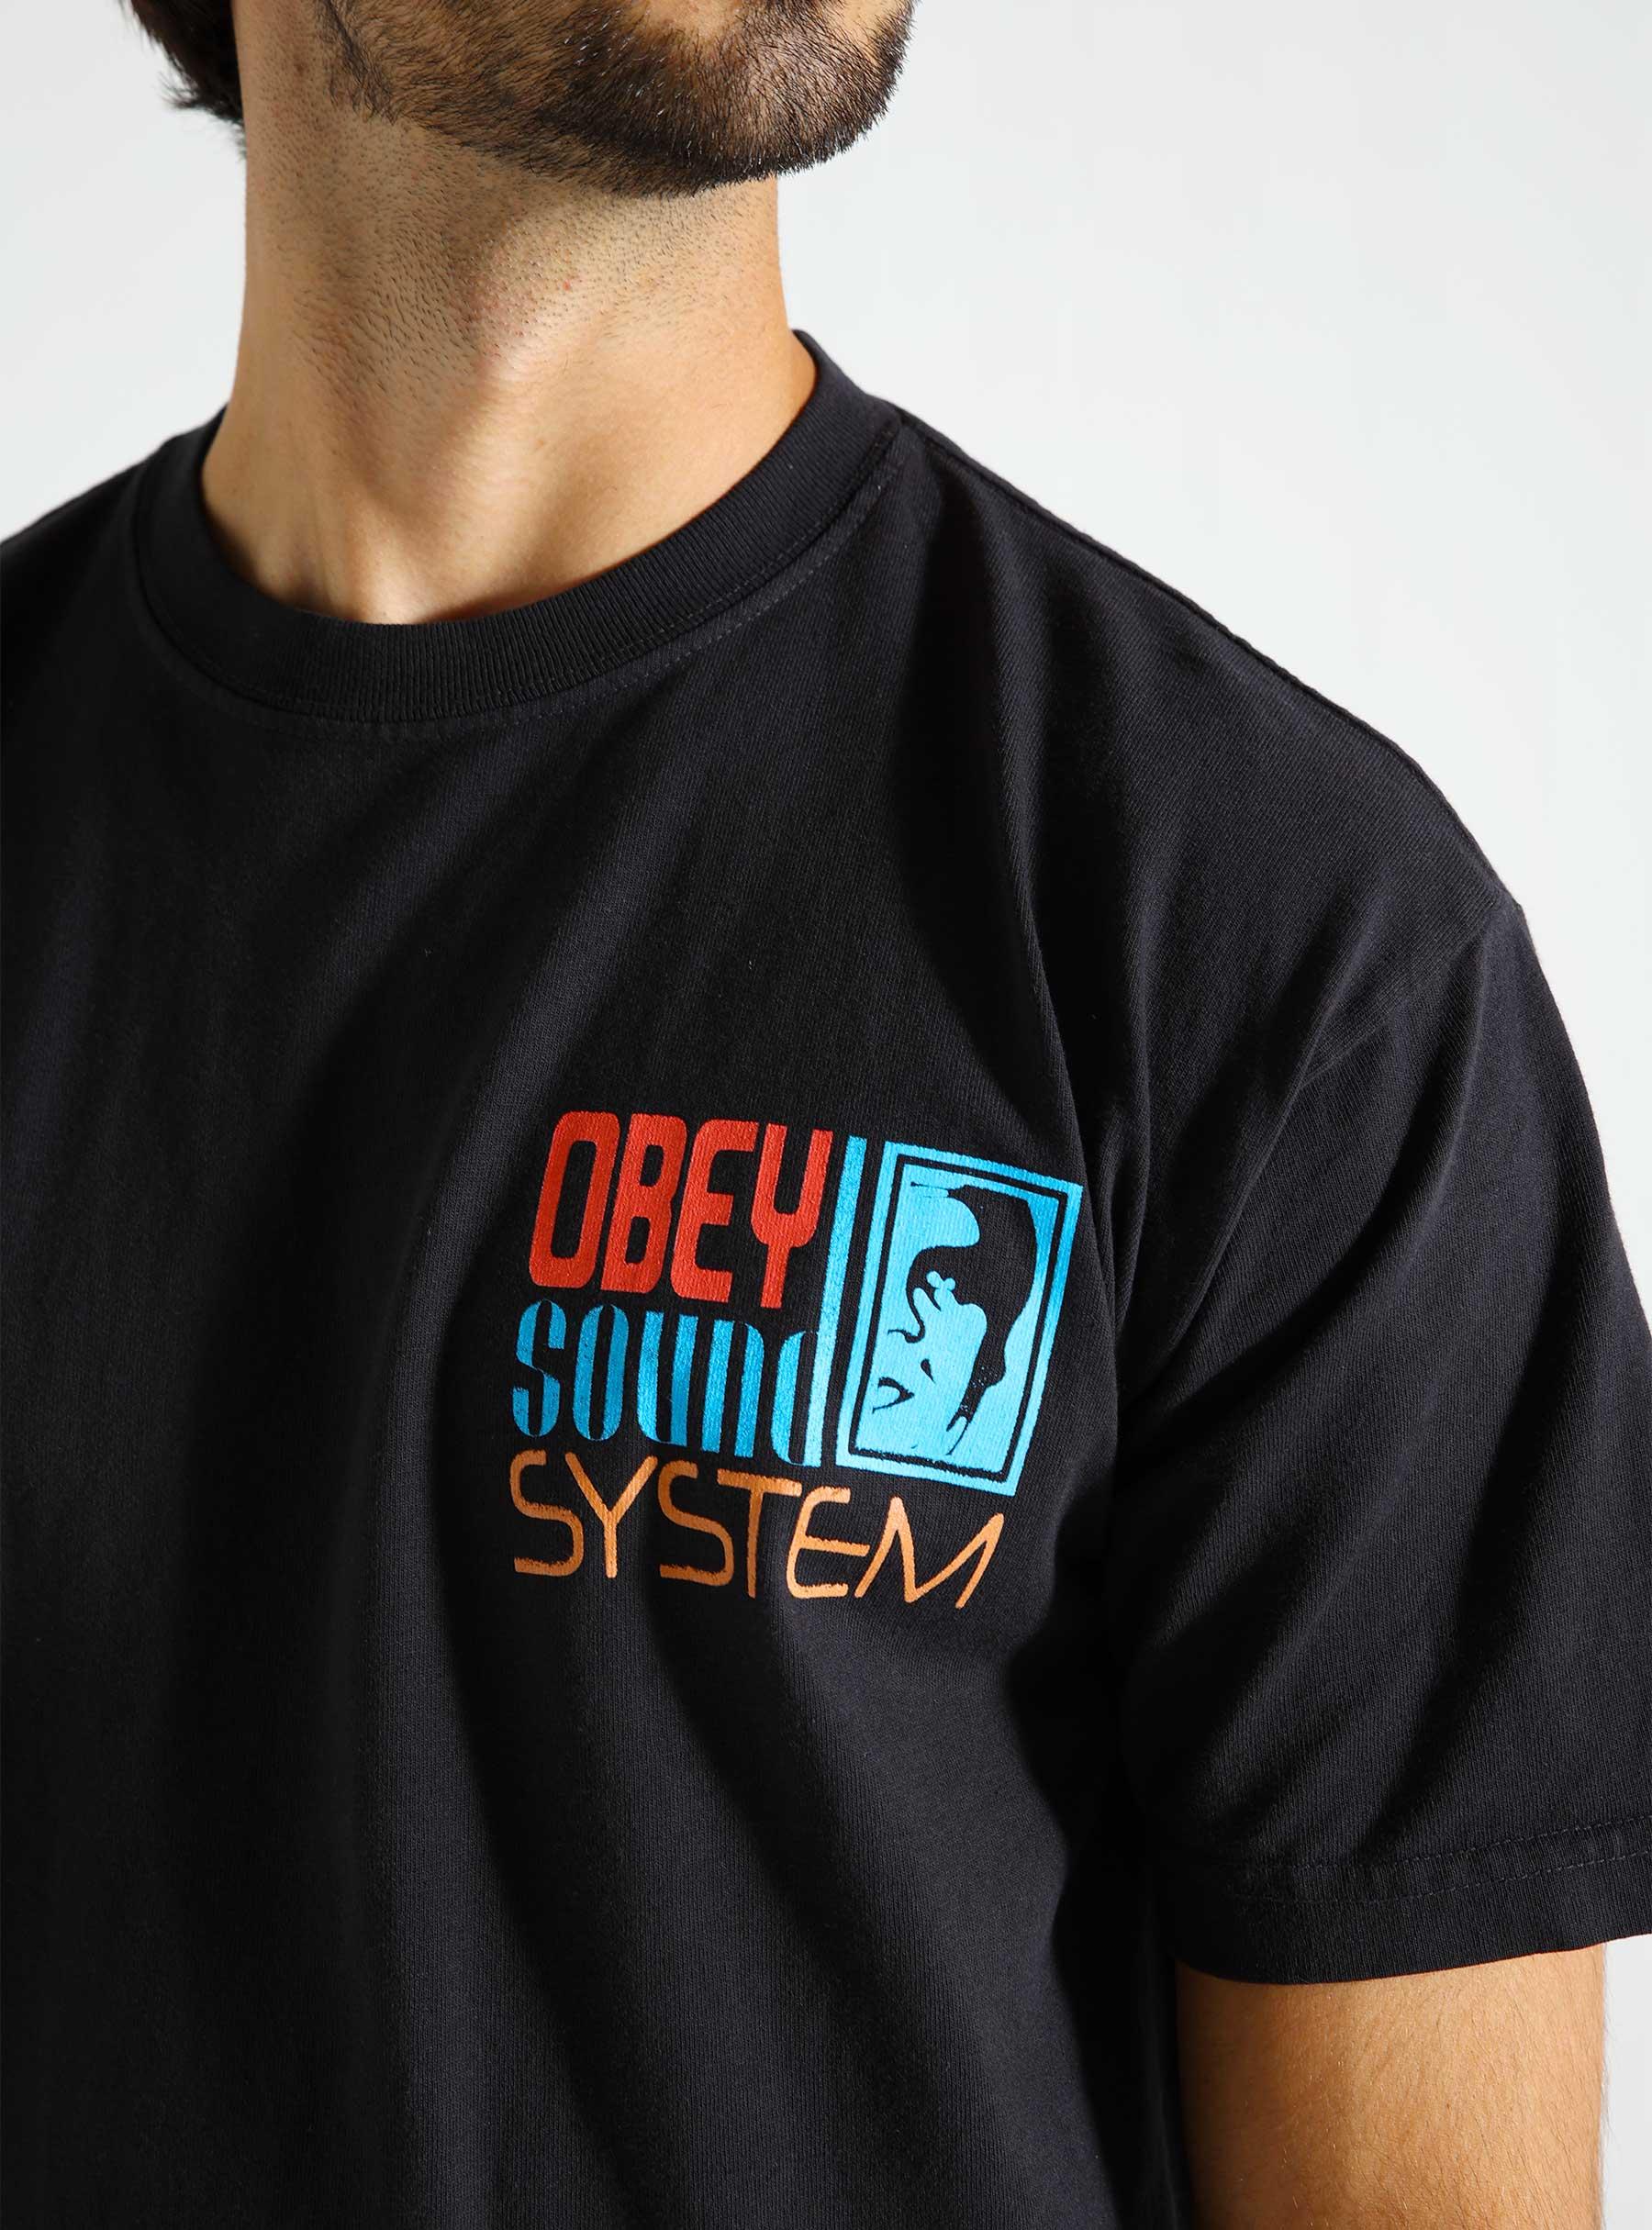 Obey Sound System T-Shirt Vintage black 166913755-VBL